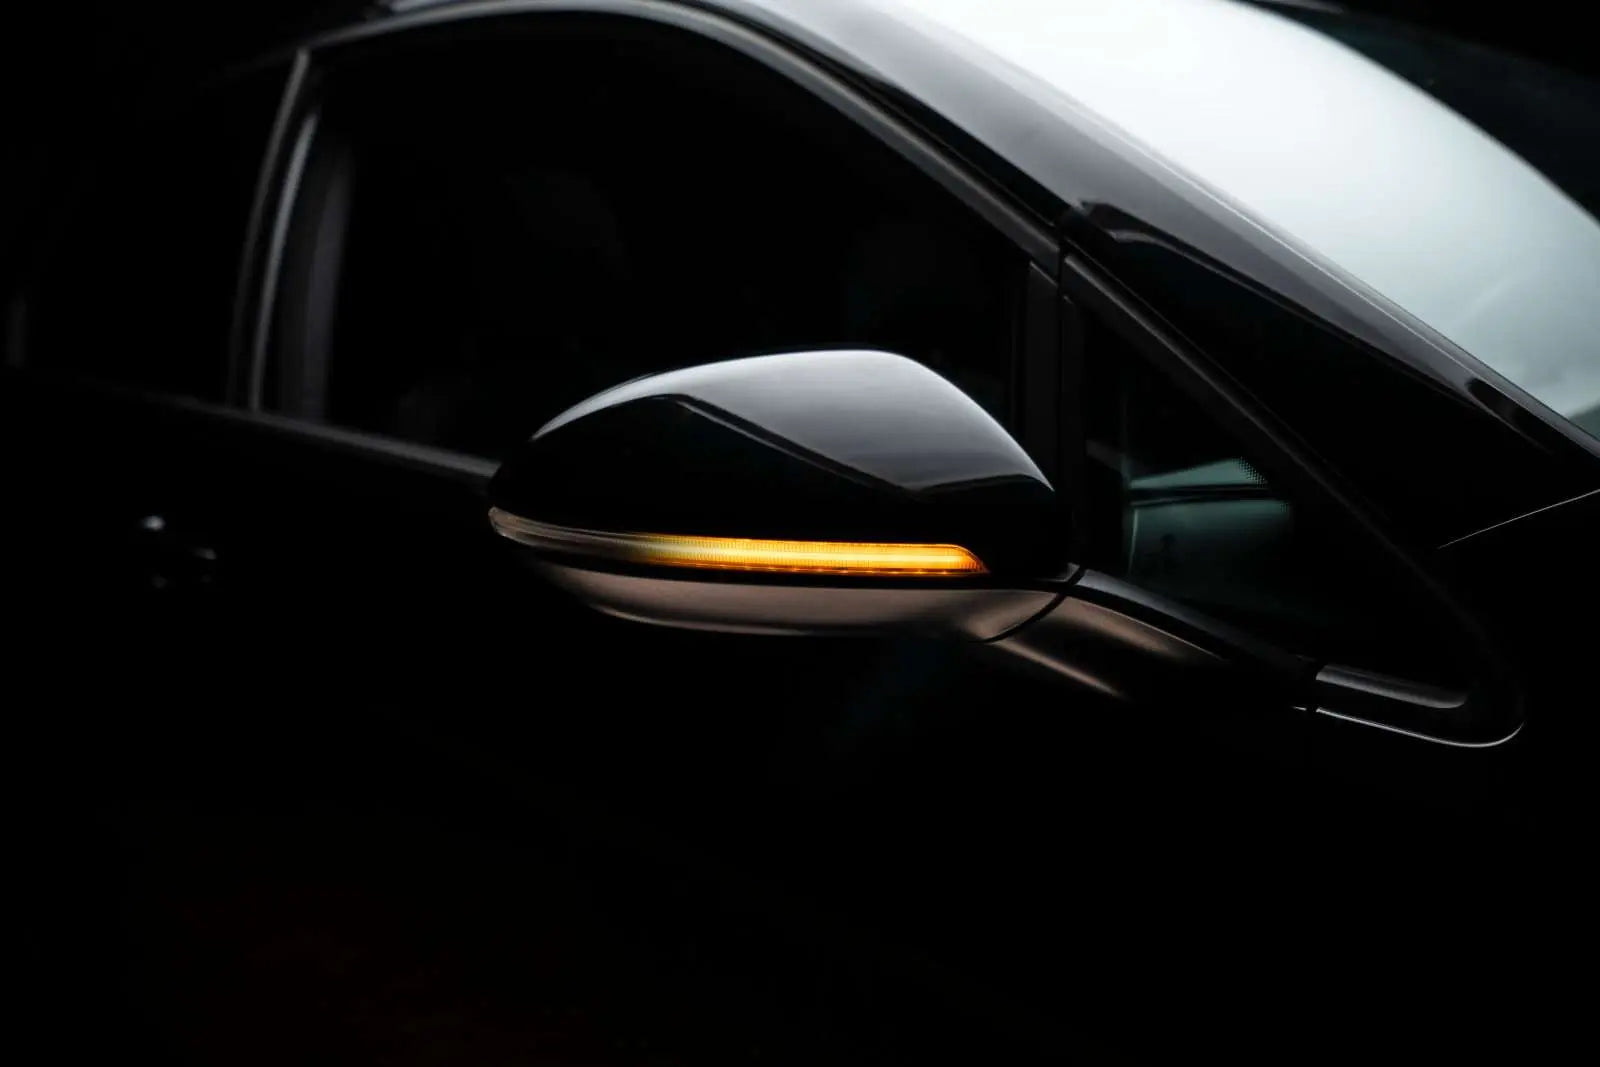 LEDRiving® Dynamische LED Spiegelblinker VW Golf VII - White Edition - Samsuns Group